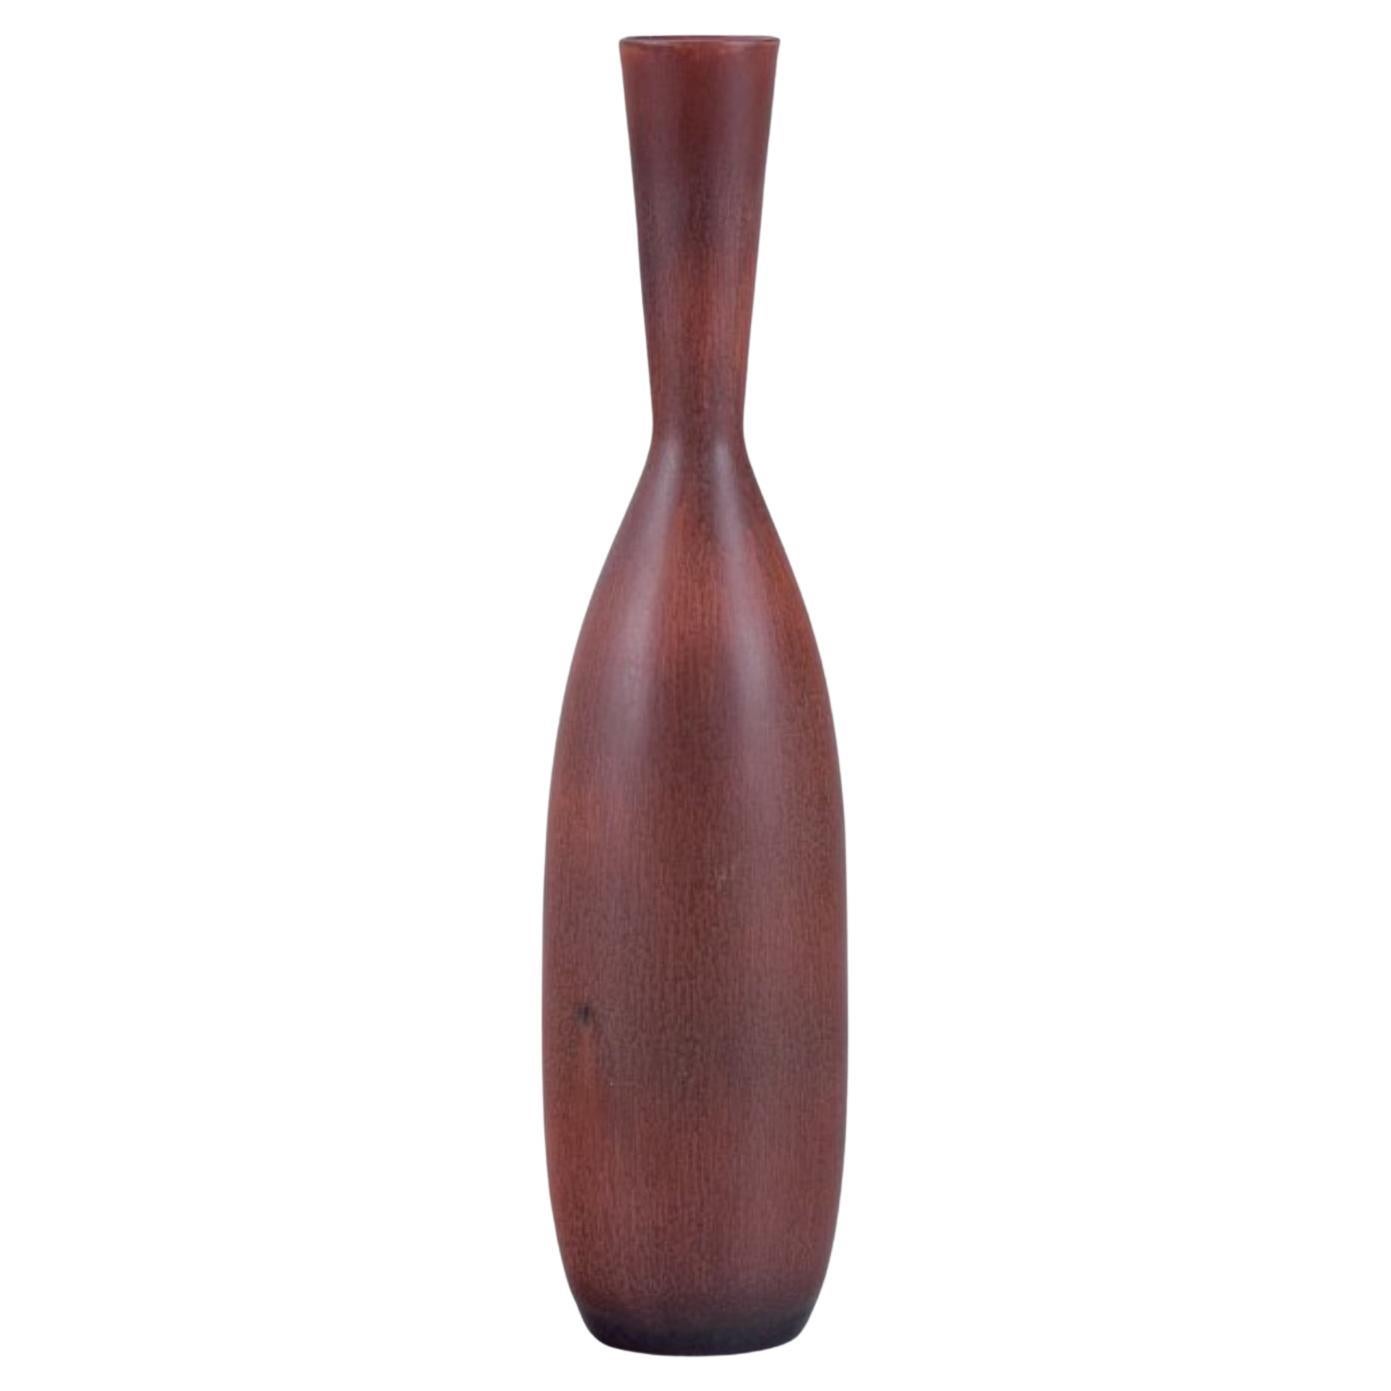 Carl Harry Stålhane for Rörstrand. Large ceramic vase with a slender neck. For Sale